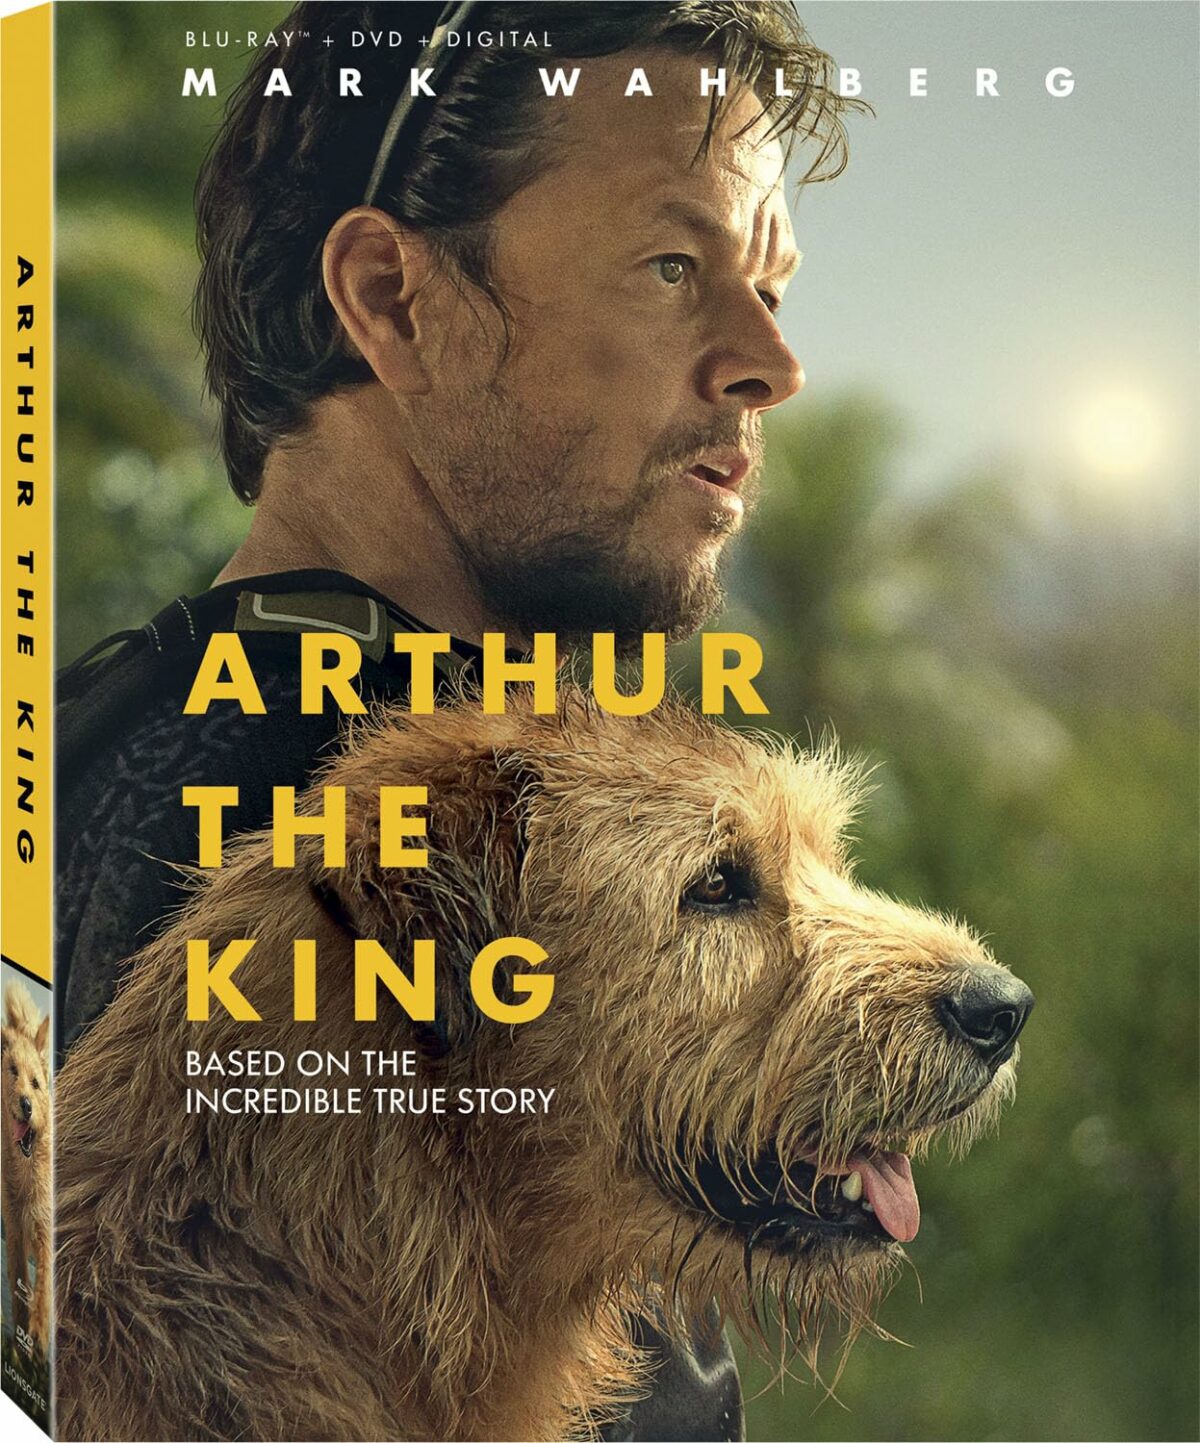 Arthur the king Blu-ray DVD